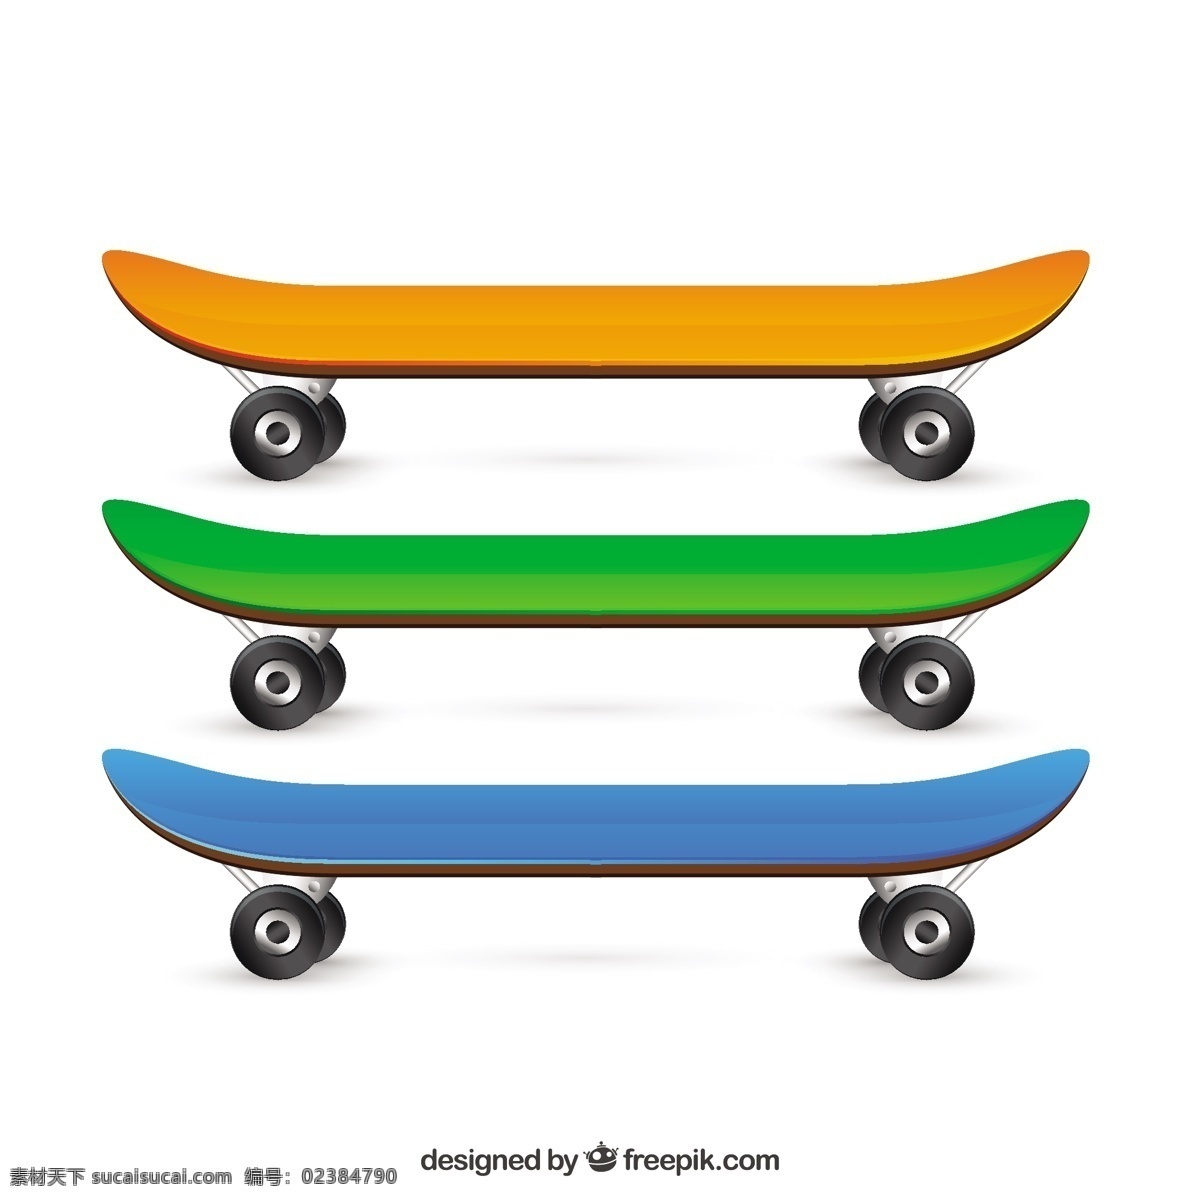 溜冰鞋背景 体育 董事会 玩具 滑板 滑冰 轮子 溜冰鞋 品种多 爱好运动 滑板品种